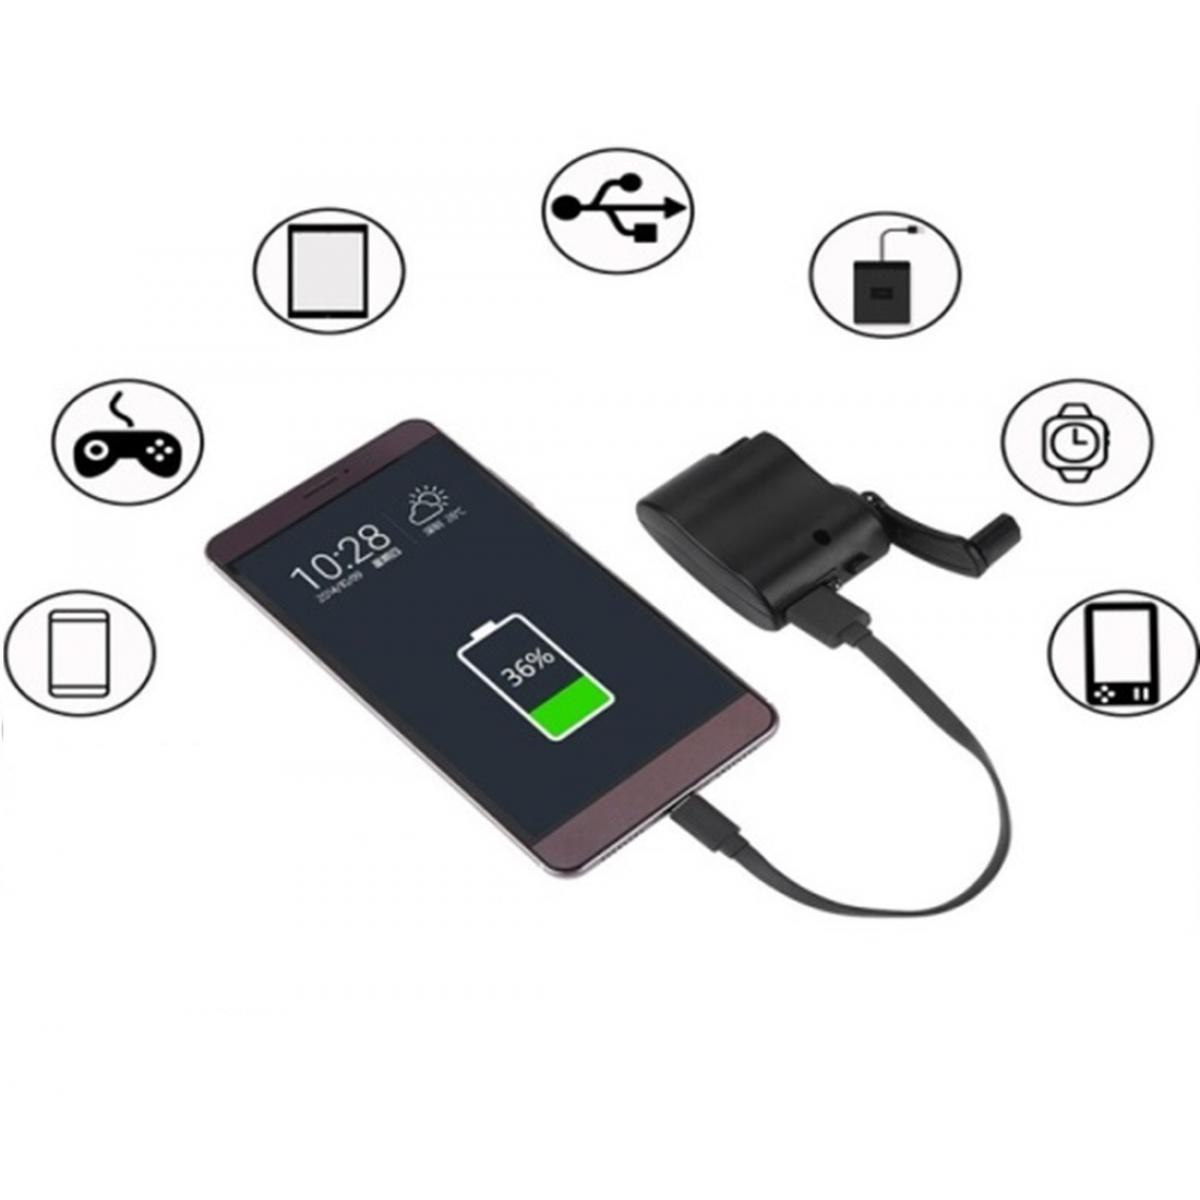 Shot - Dynamo pour WIKO View 3 Lite Smartphone Chargeur USB Batterie Manivelle Secours (NOIR) - Autres accessoires smartphone